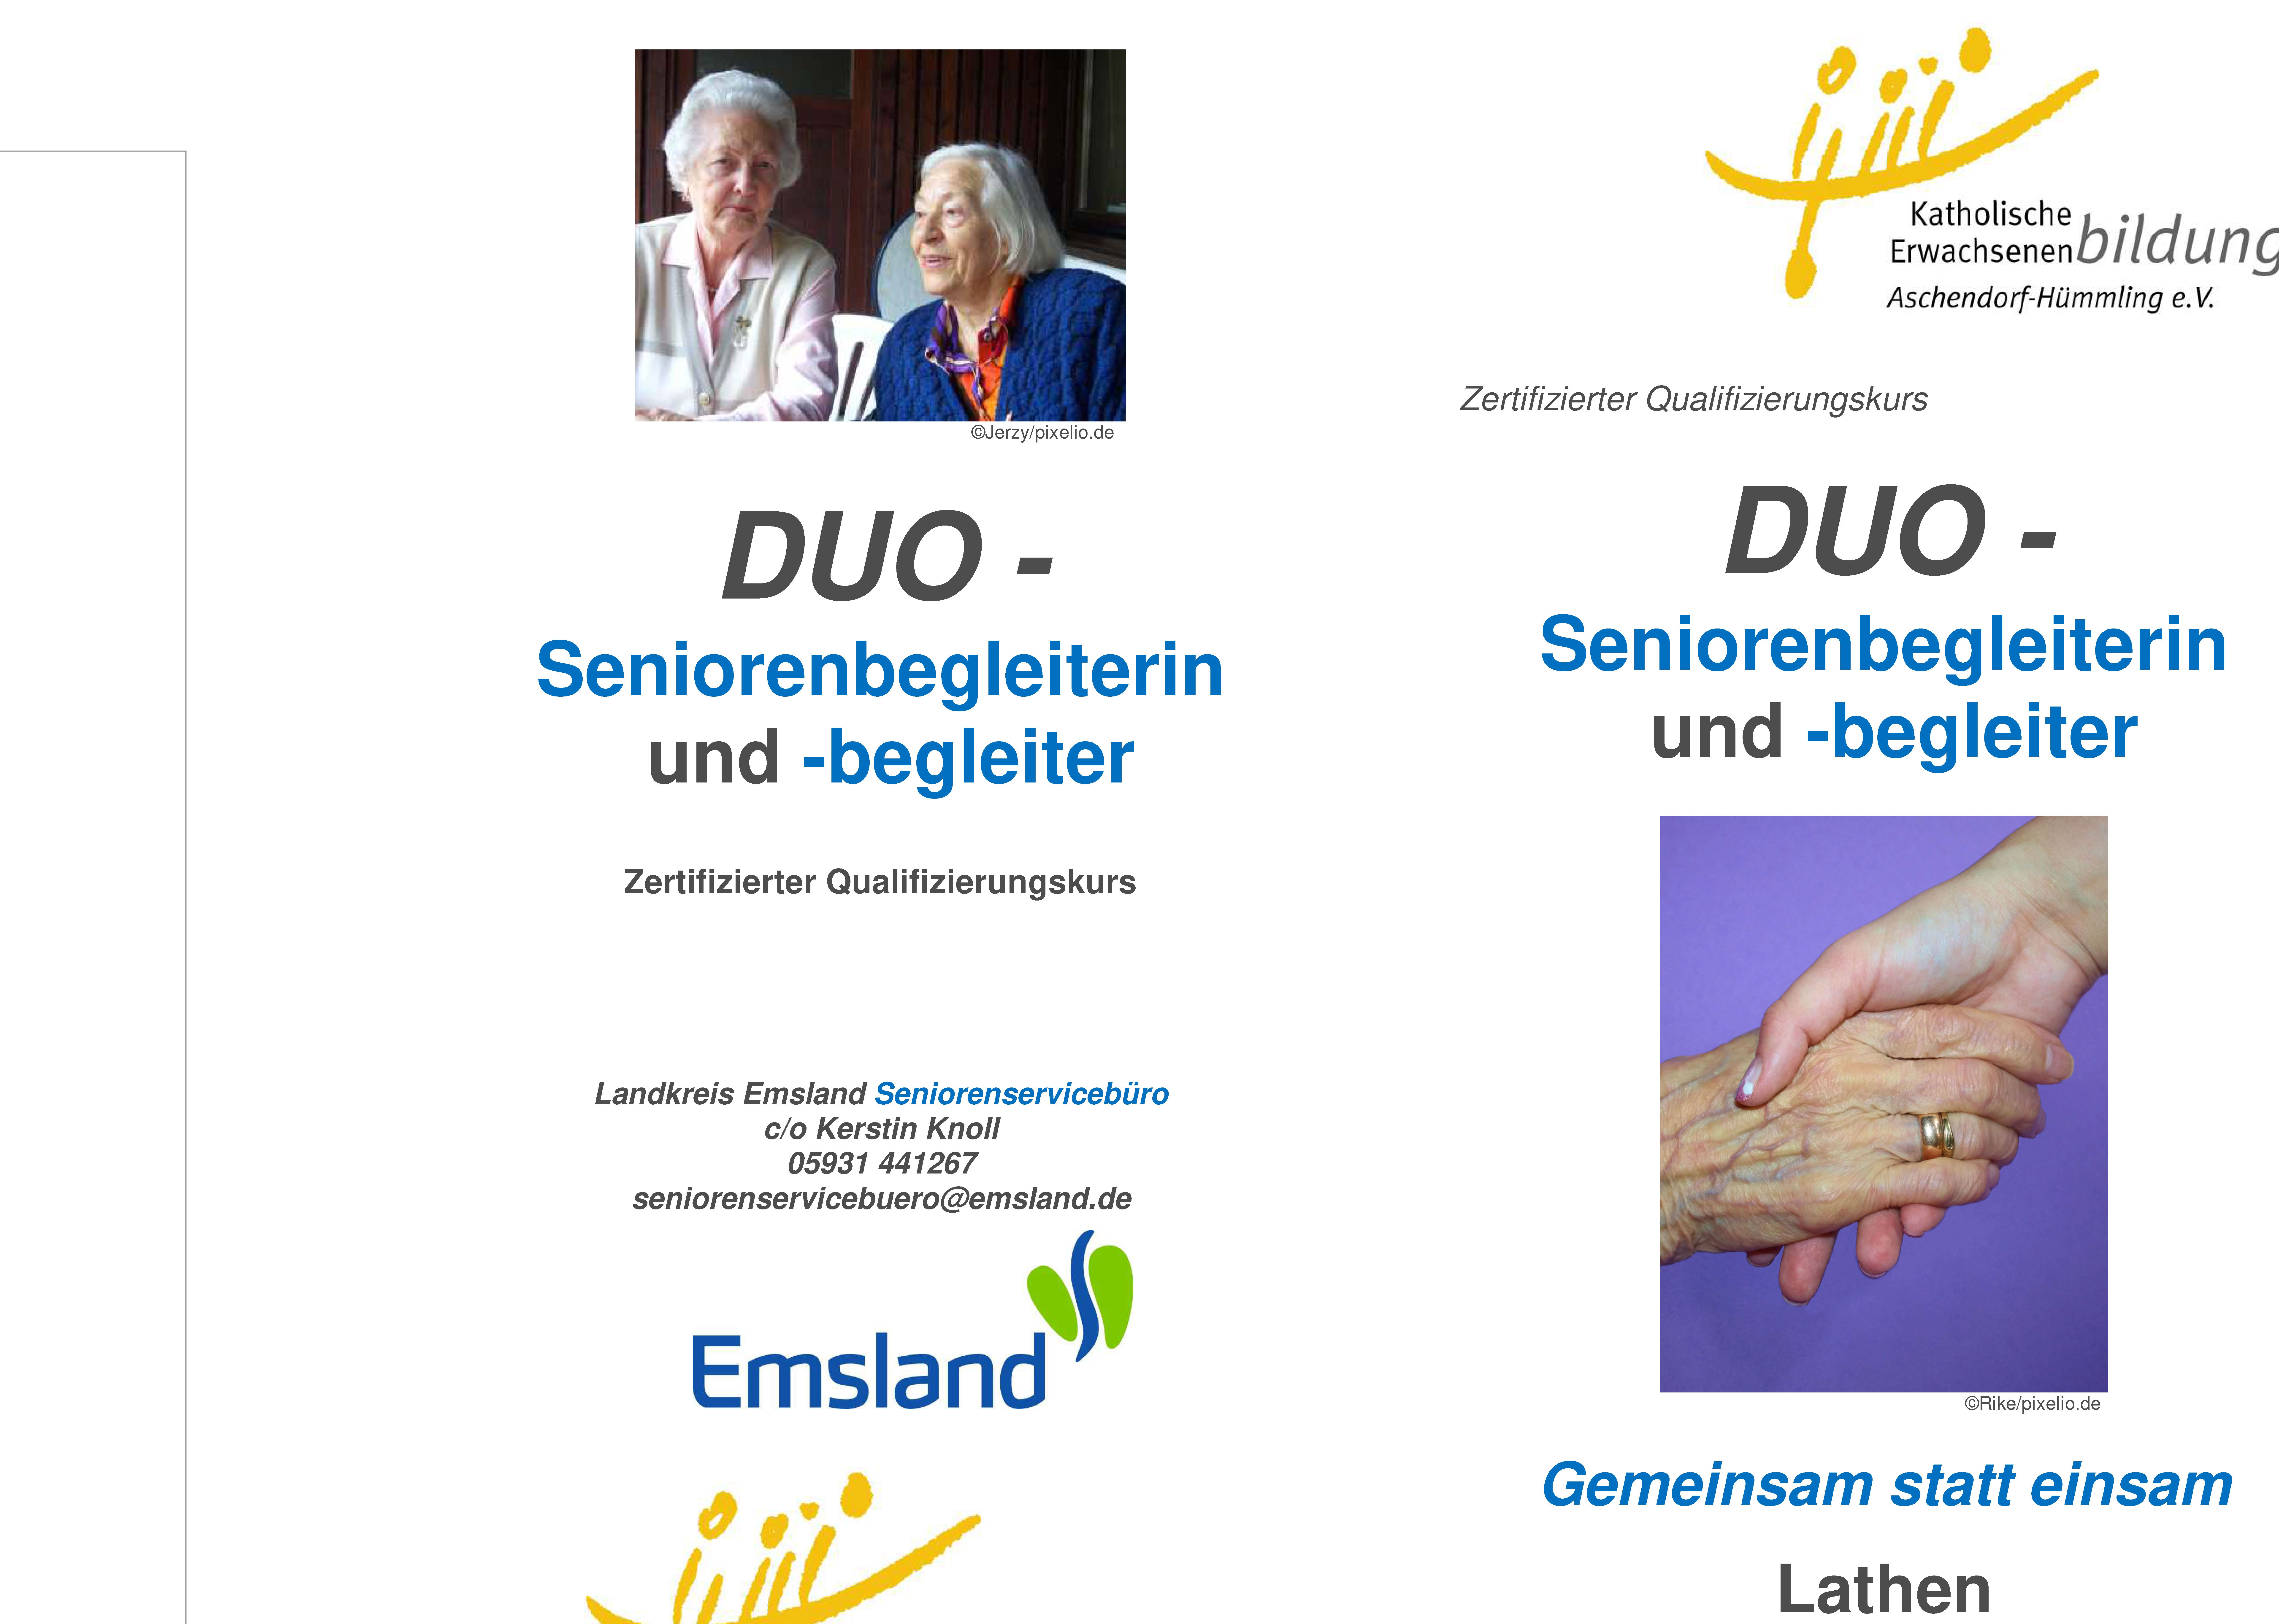 In Lathen – zertifizierter Qualifizierungskurs DUO – Seniorenbegleiterin und -begleiter